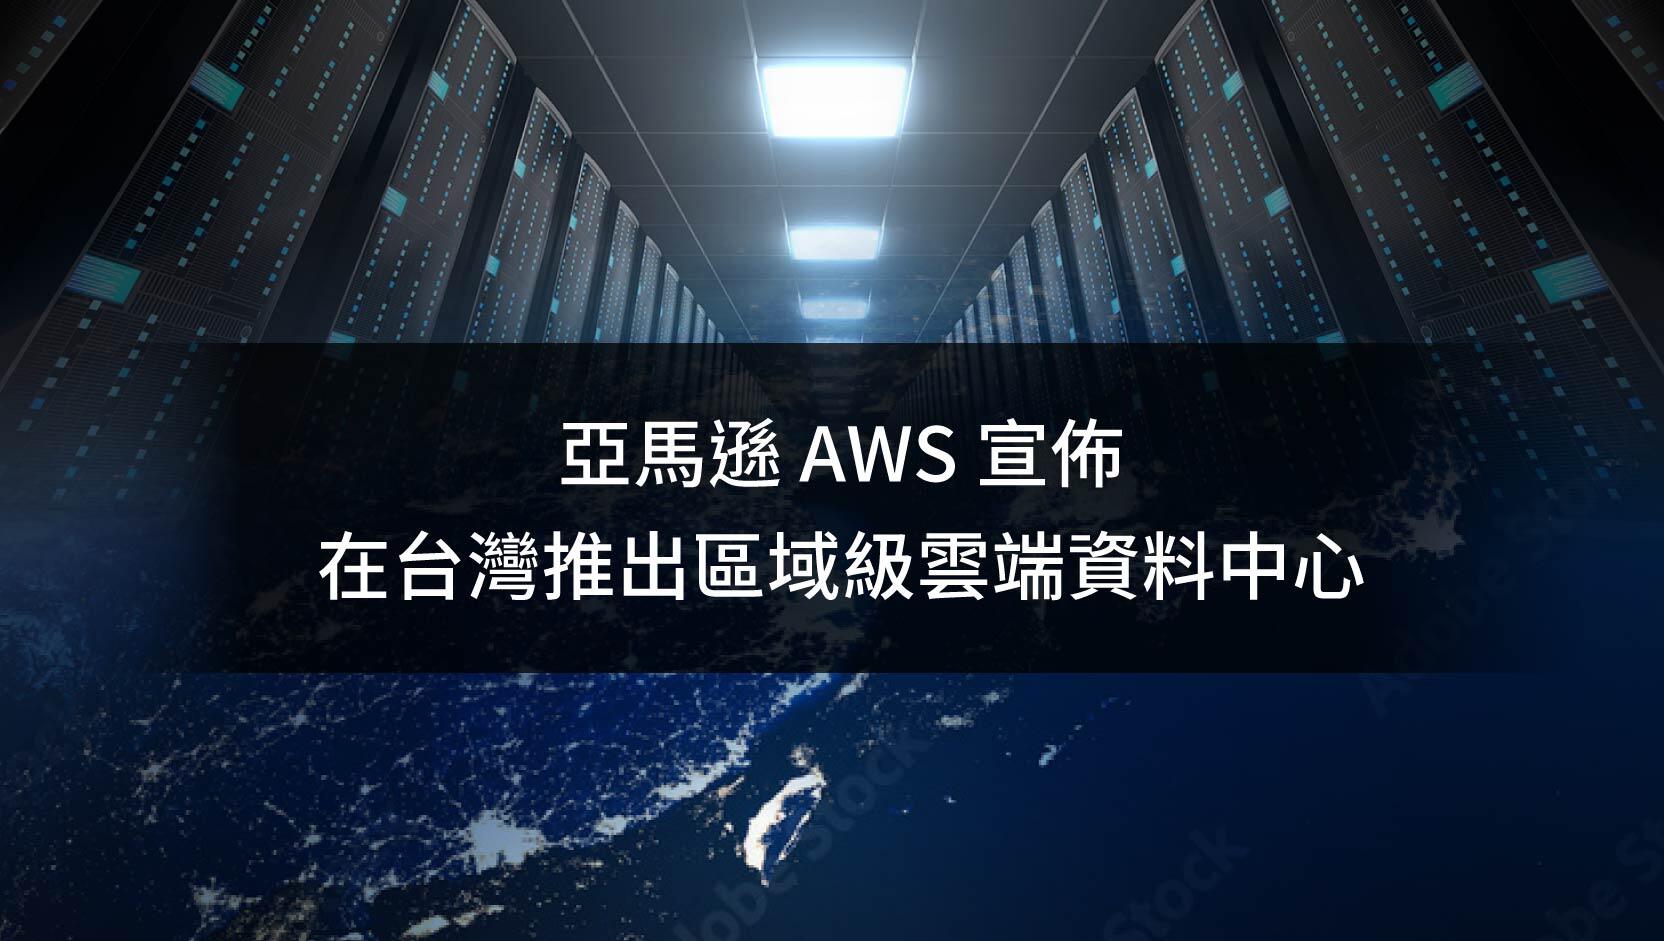 AWS Taiwan Data center